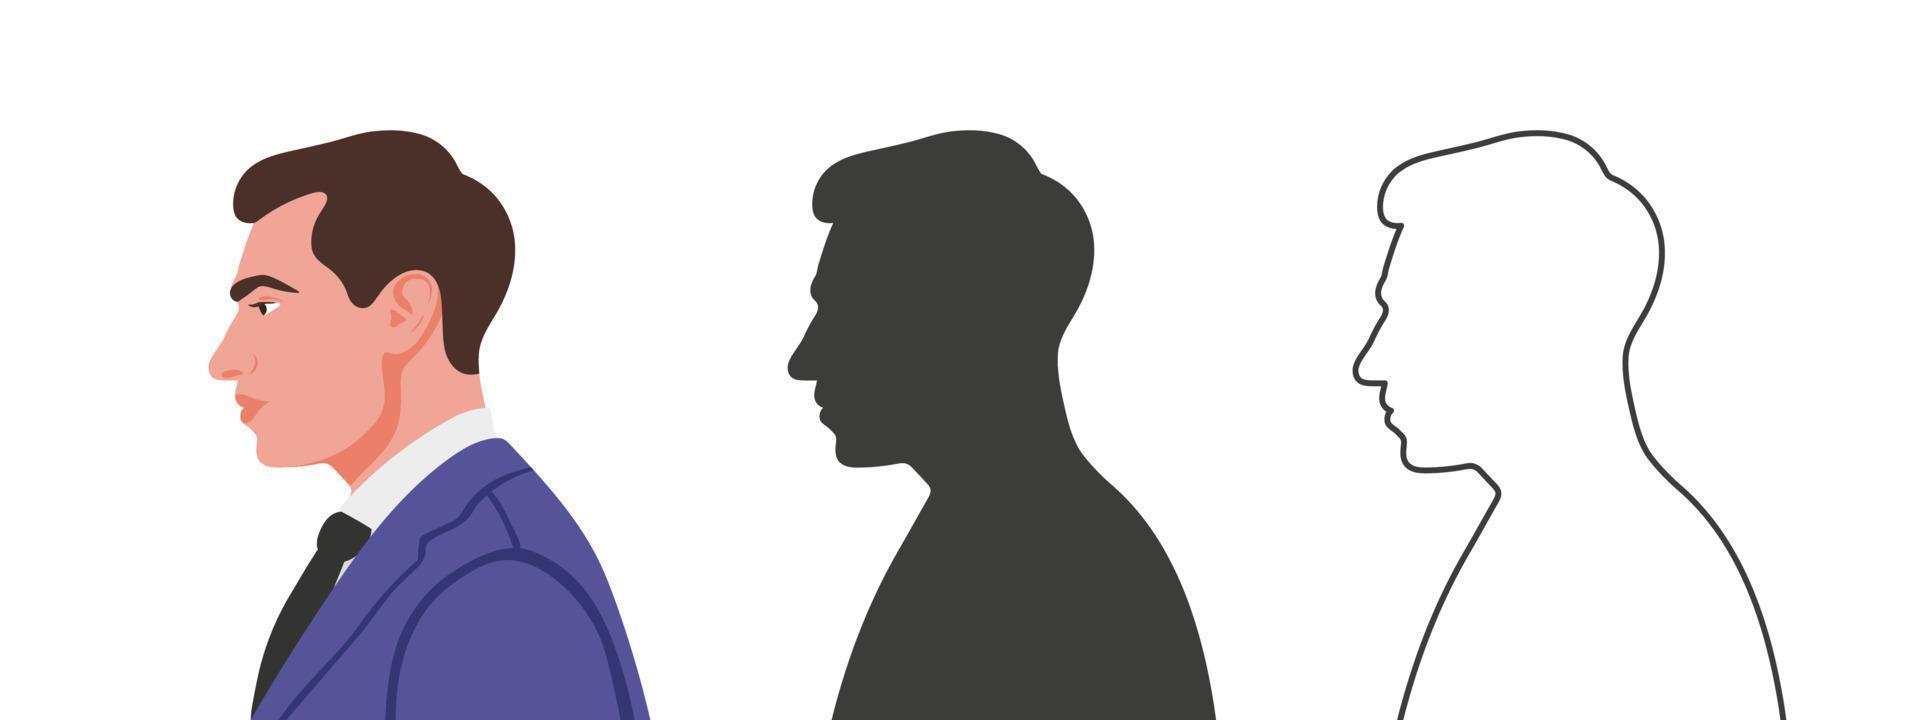 cara de hombre de lado. siluetas de personas en tres estilos diferentes. perfil de un rostro. ilustración vectorial vector